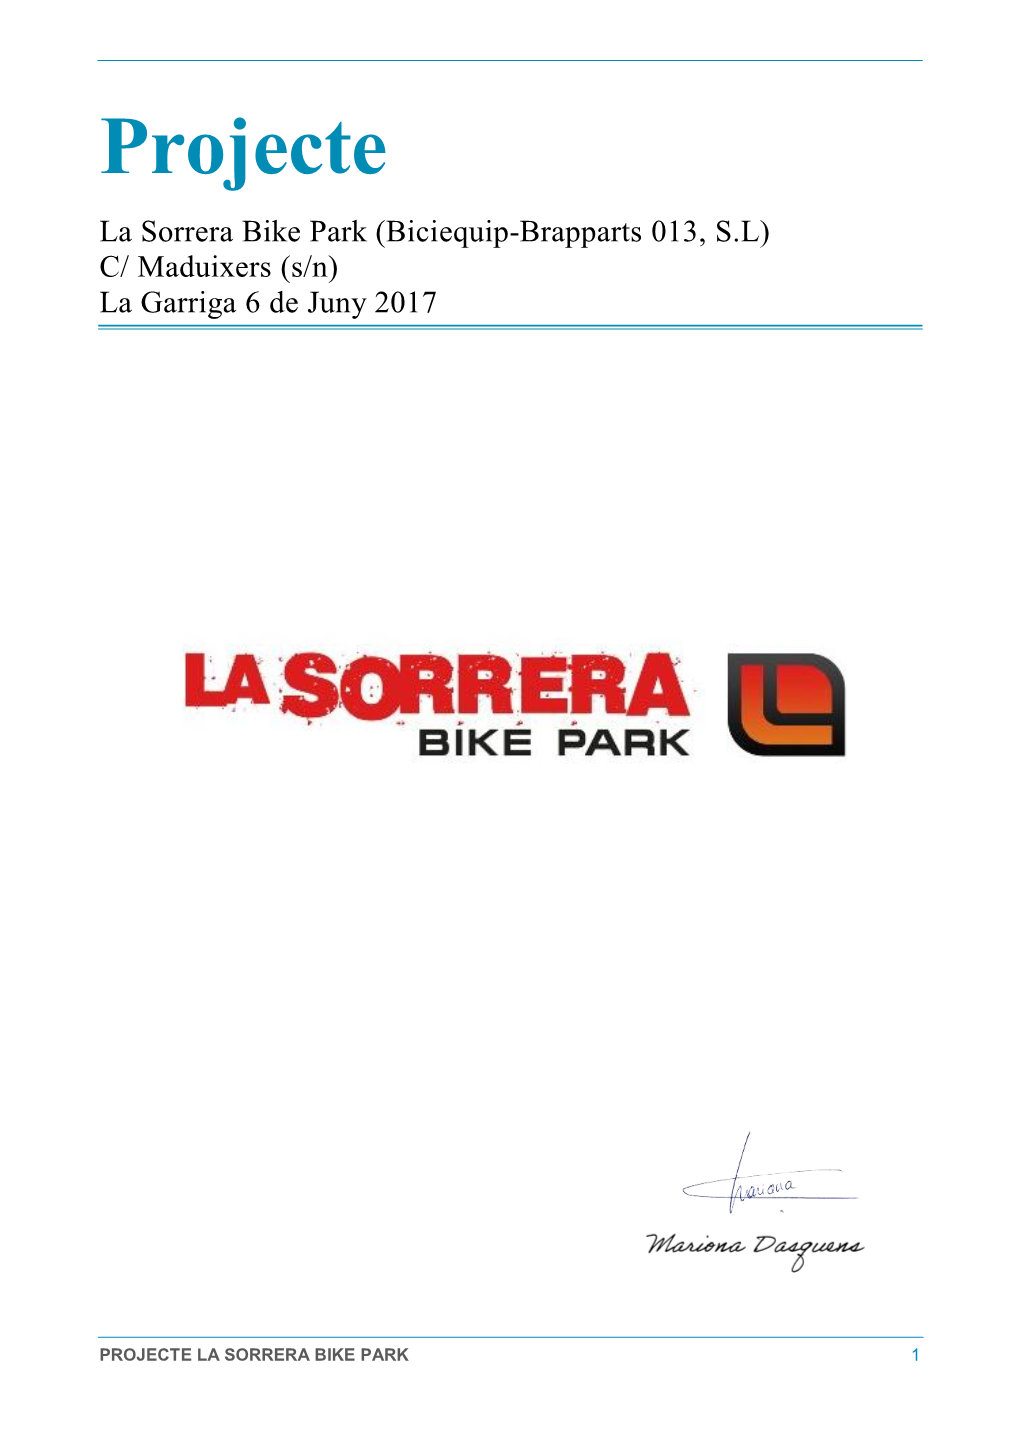 Projecte La Sorrera Bike Park (Biciequip-Brapparts 013, S.L) C/ Maduixers (S/N) La Garriga 6 De Juny 2017